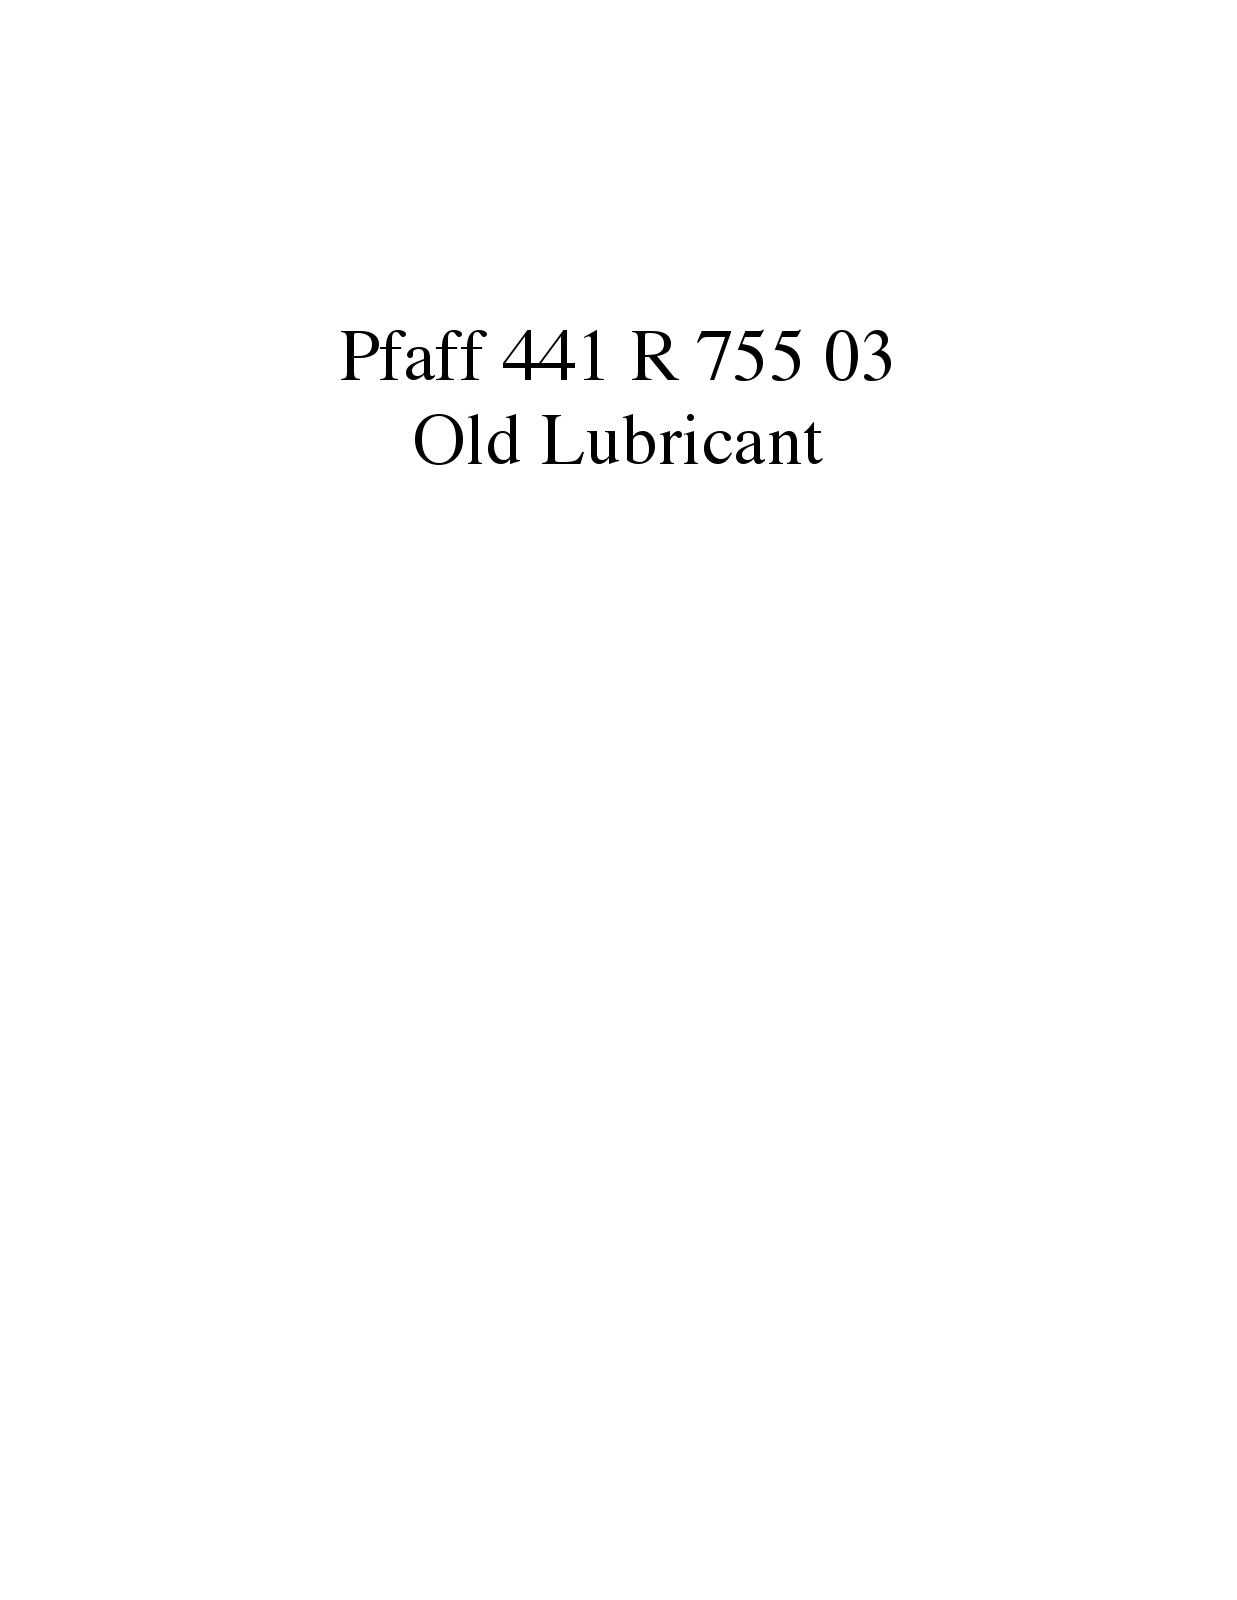 PFAFF 441 R 755 03 Parts List